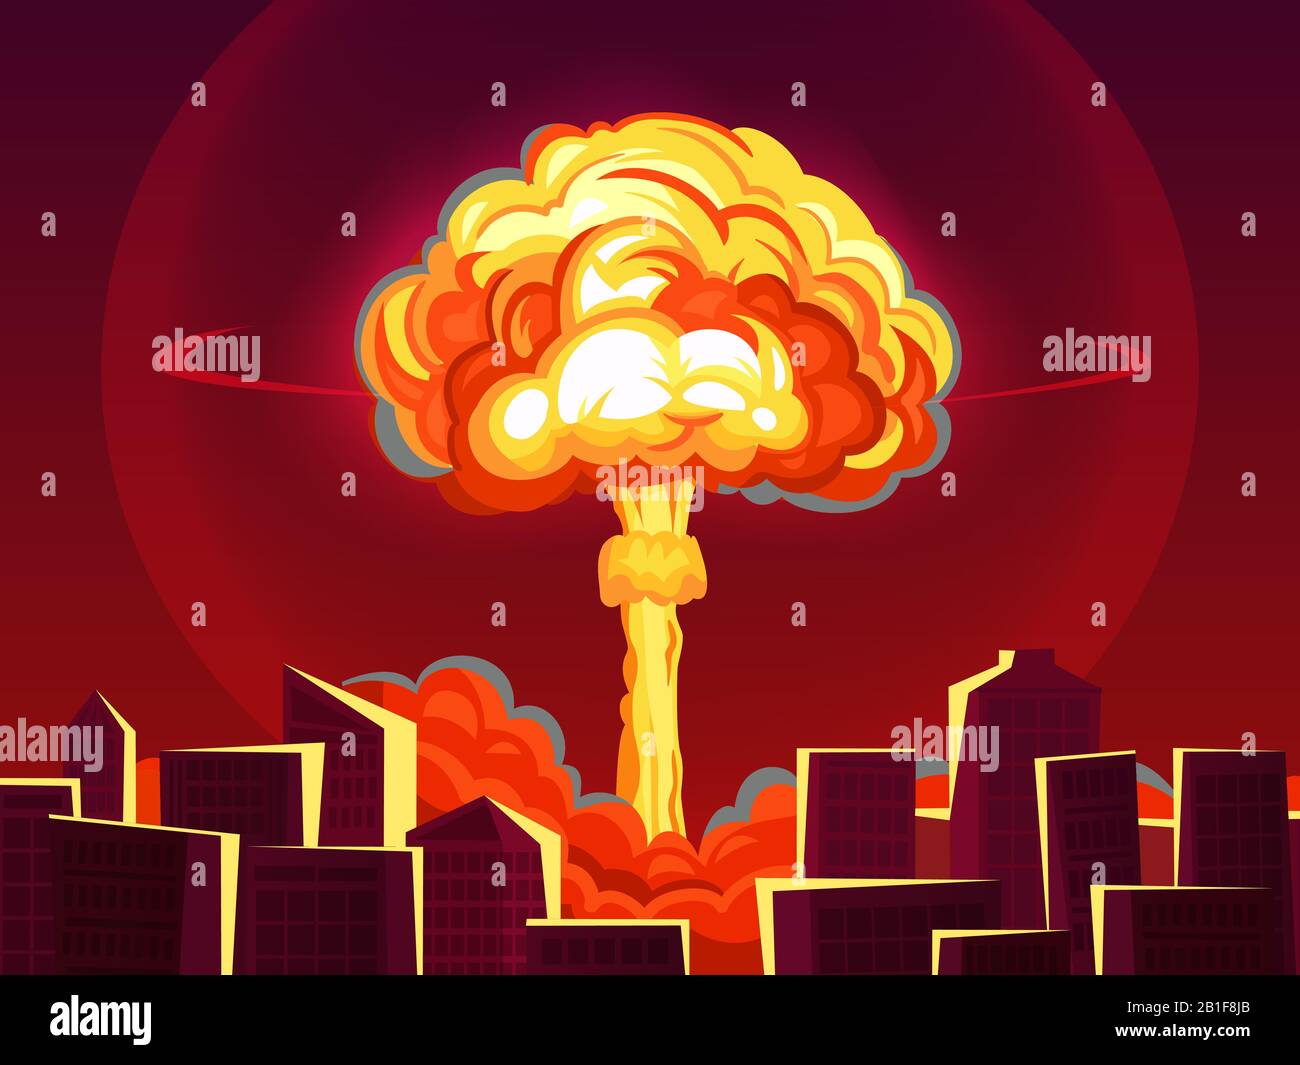 Kernexplosion in der Stadt. Atombombenabwürfe, Bombenexplosion feurige Pilzwolke und Kriegszerstörung Cartoon-Vektor-Illustration Stock Vektor